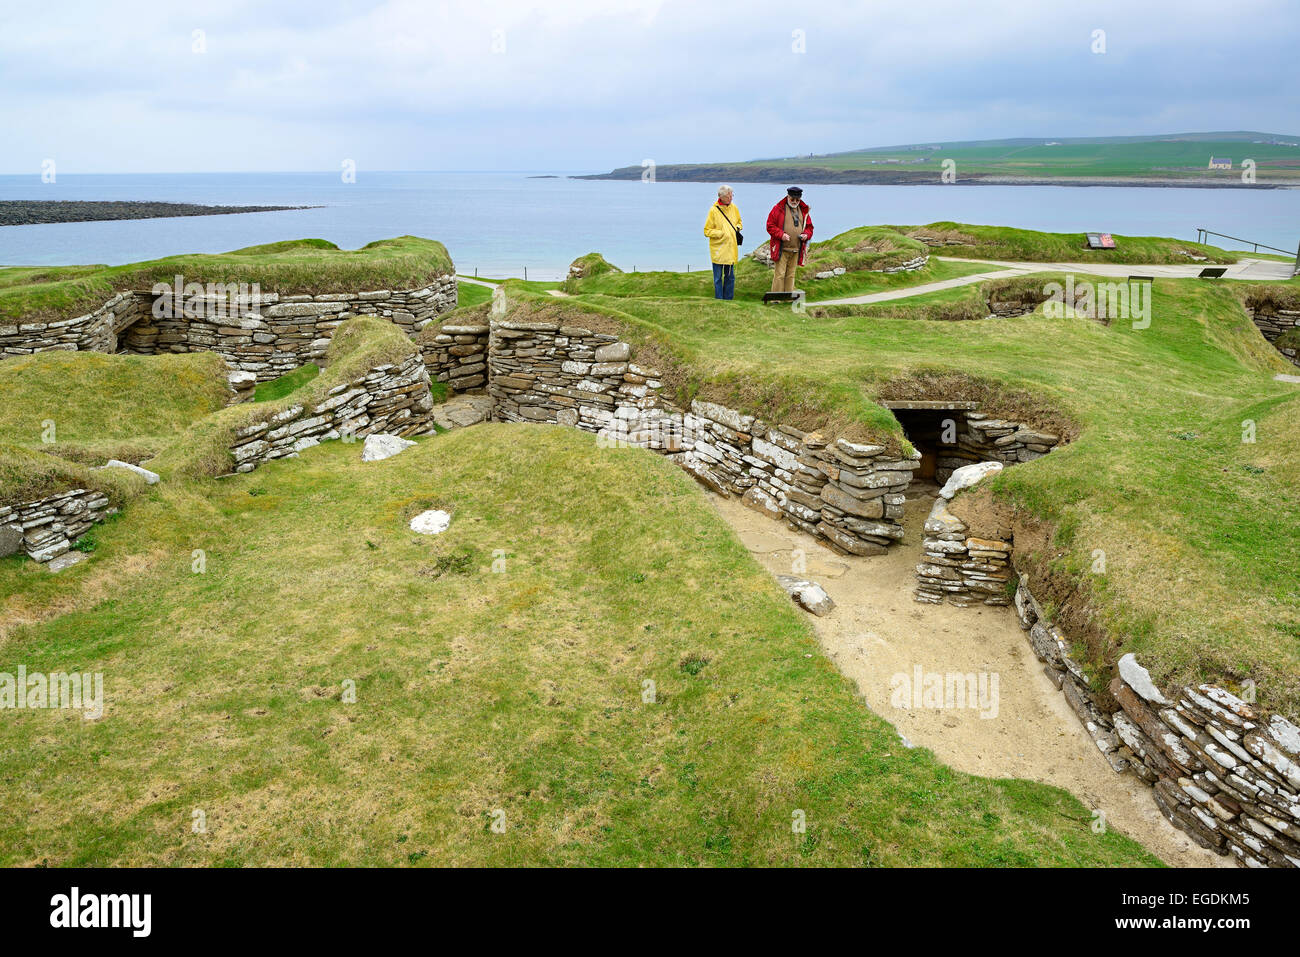 Deux touristes se rendant sur le site néolithique Skara Brae, Skara Brae, Site du patrimoine mondial de l'UNESCO Le Coeur néolithique des Orcades, îles Orcades, Ecosse, Grande-Bretagne, Royaume-Uni Banque D'Images